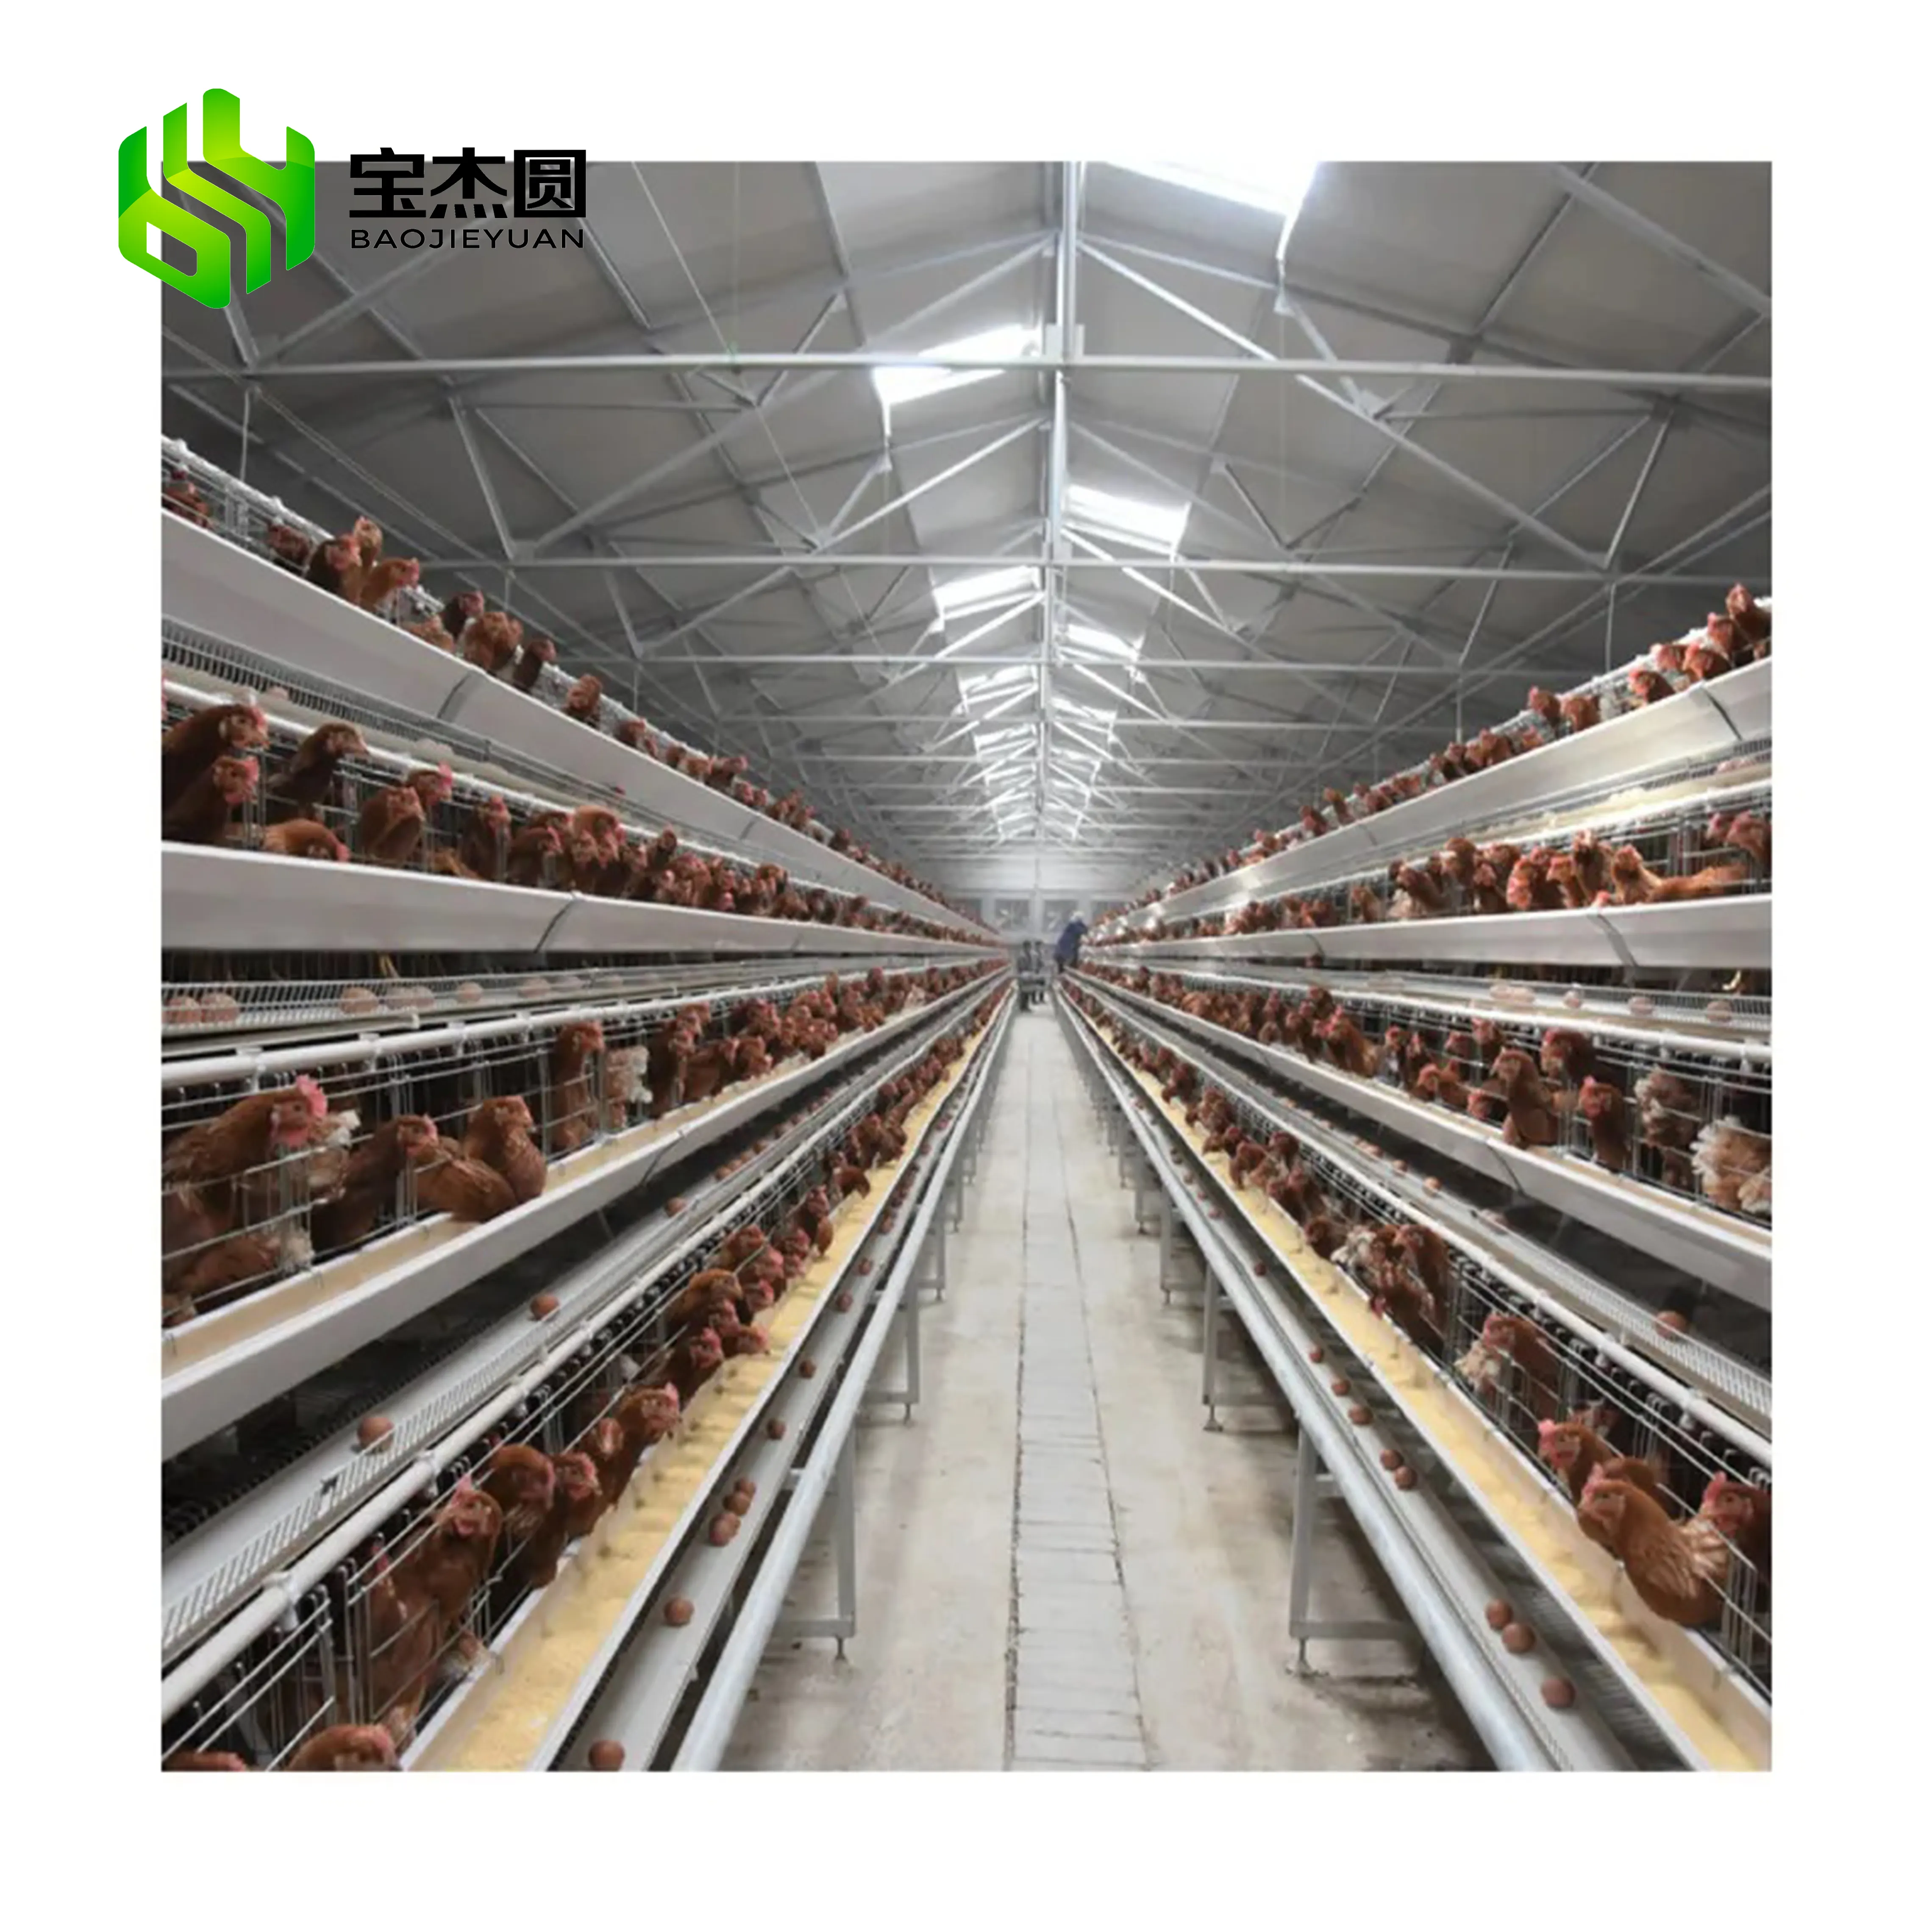 מפעל מחיר 10000 תרנגולות ציפורים בעלי החיים ביצת הנחת סוללה שכבה אוטומטי עוף כלובי עבור עופות